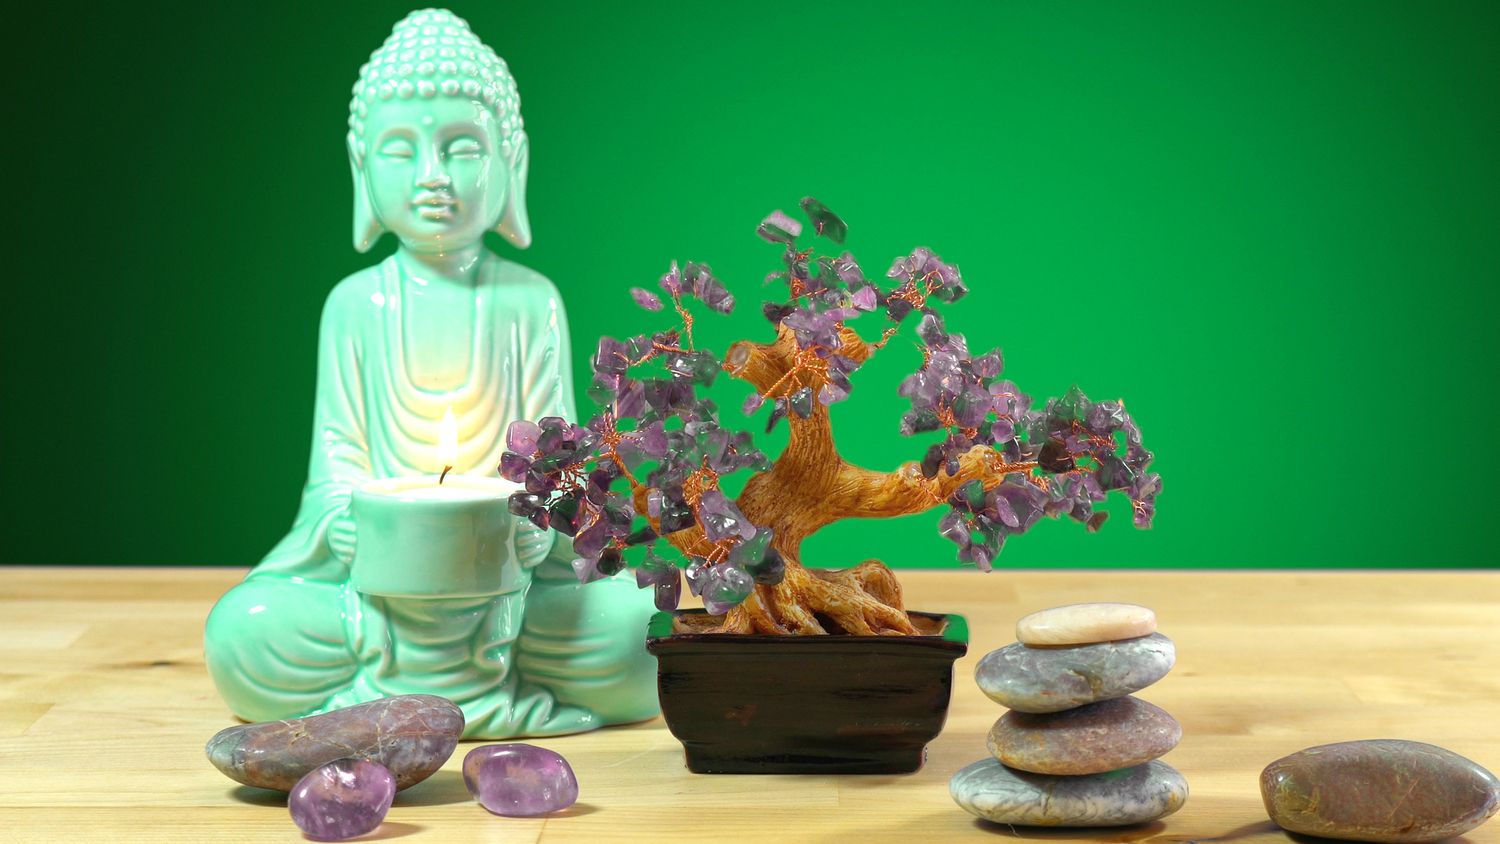 Calmante mesa de interior zen con estatua de buda sosteniendo una vela encendida